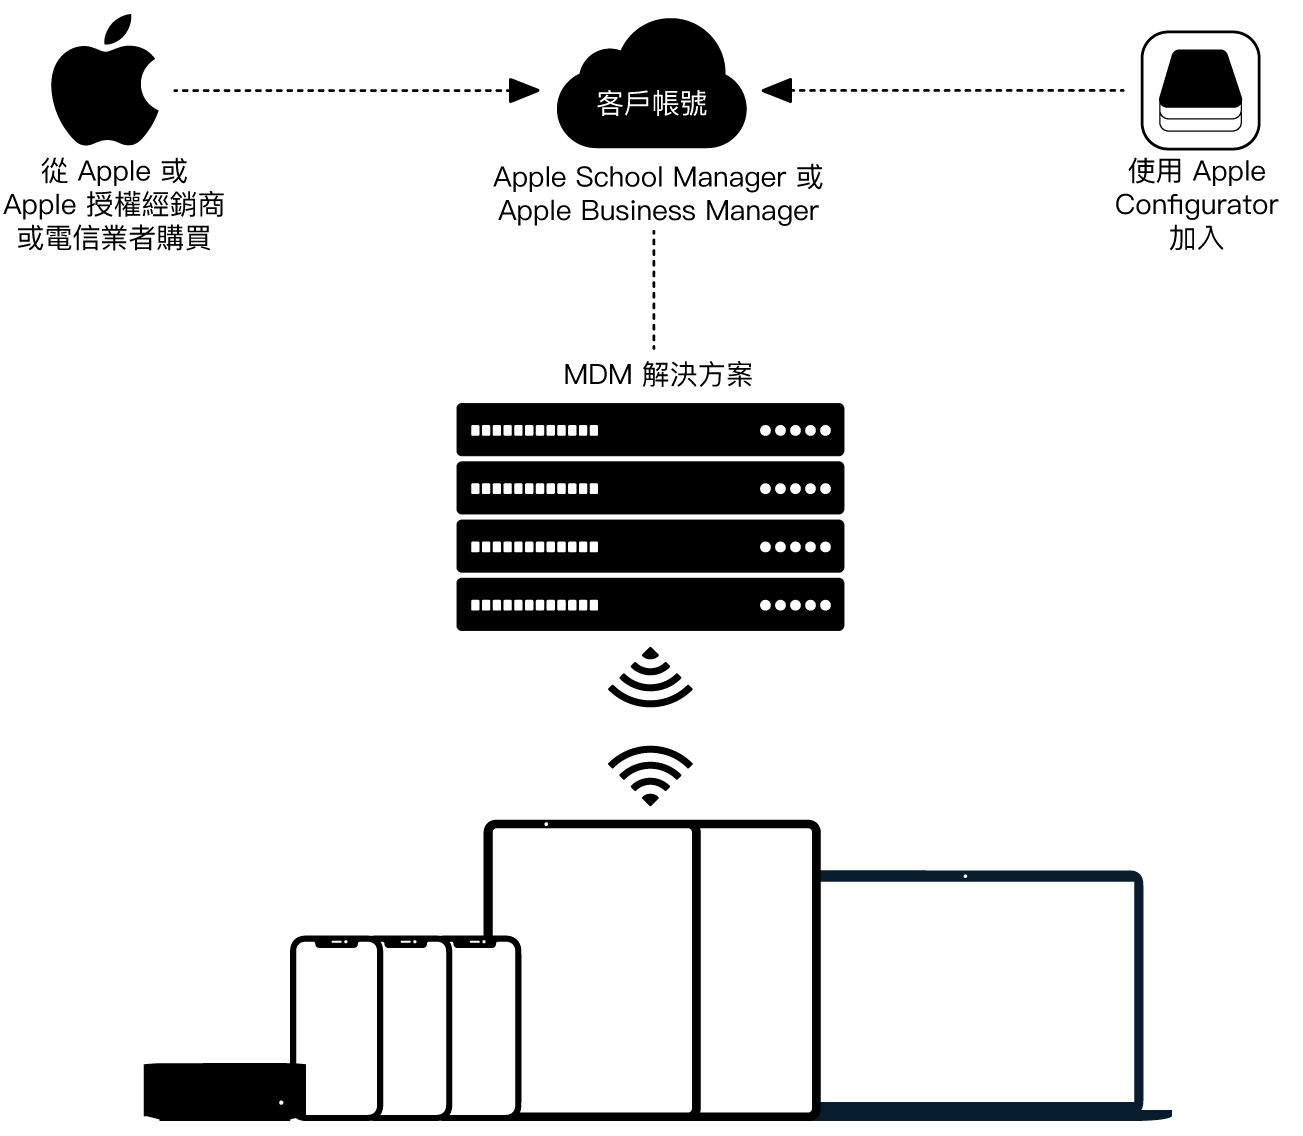 圖示如何將裝置指派到「Apple 校務管理」或「Apple 商務管理」。